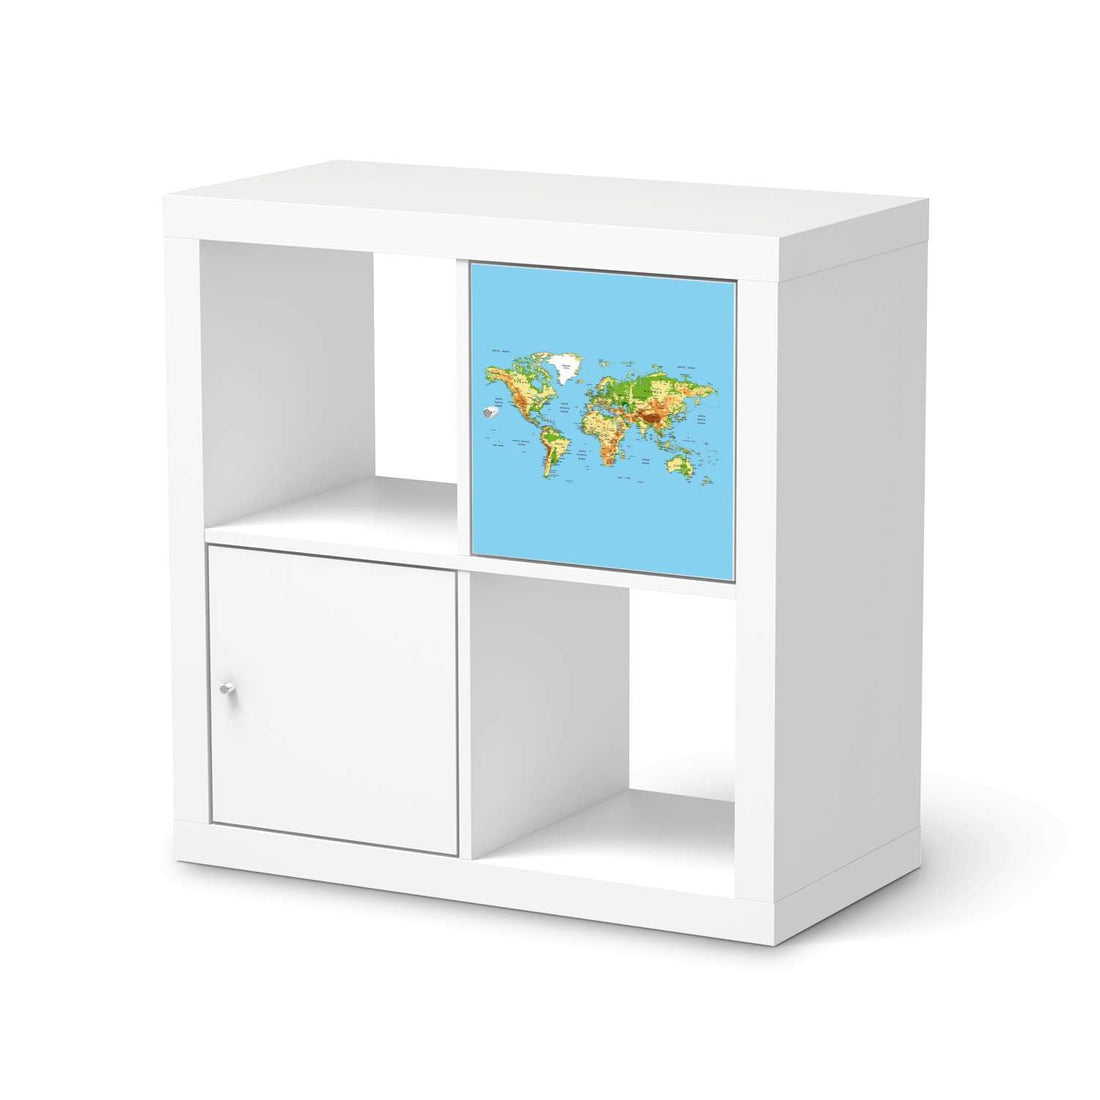 Selbstklebende Folie Geografische Weltkarte - IKEA Kallax Regal 1 Türe  - weiss